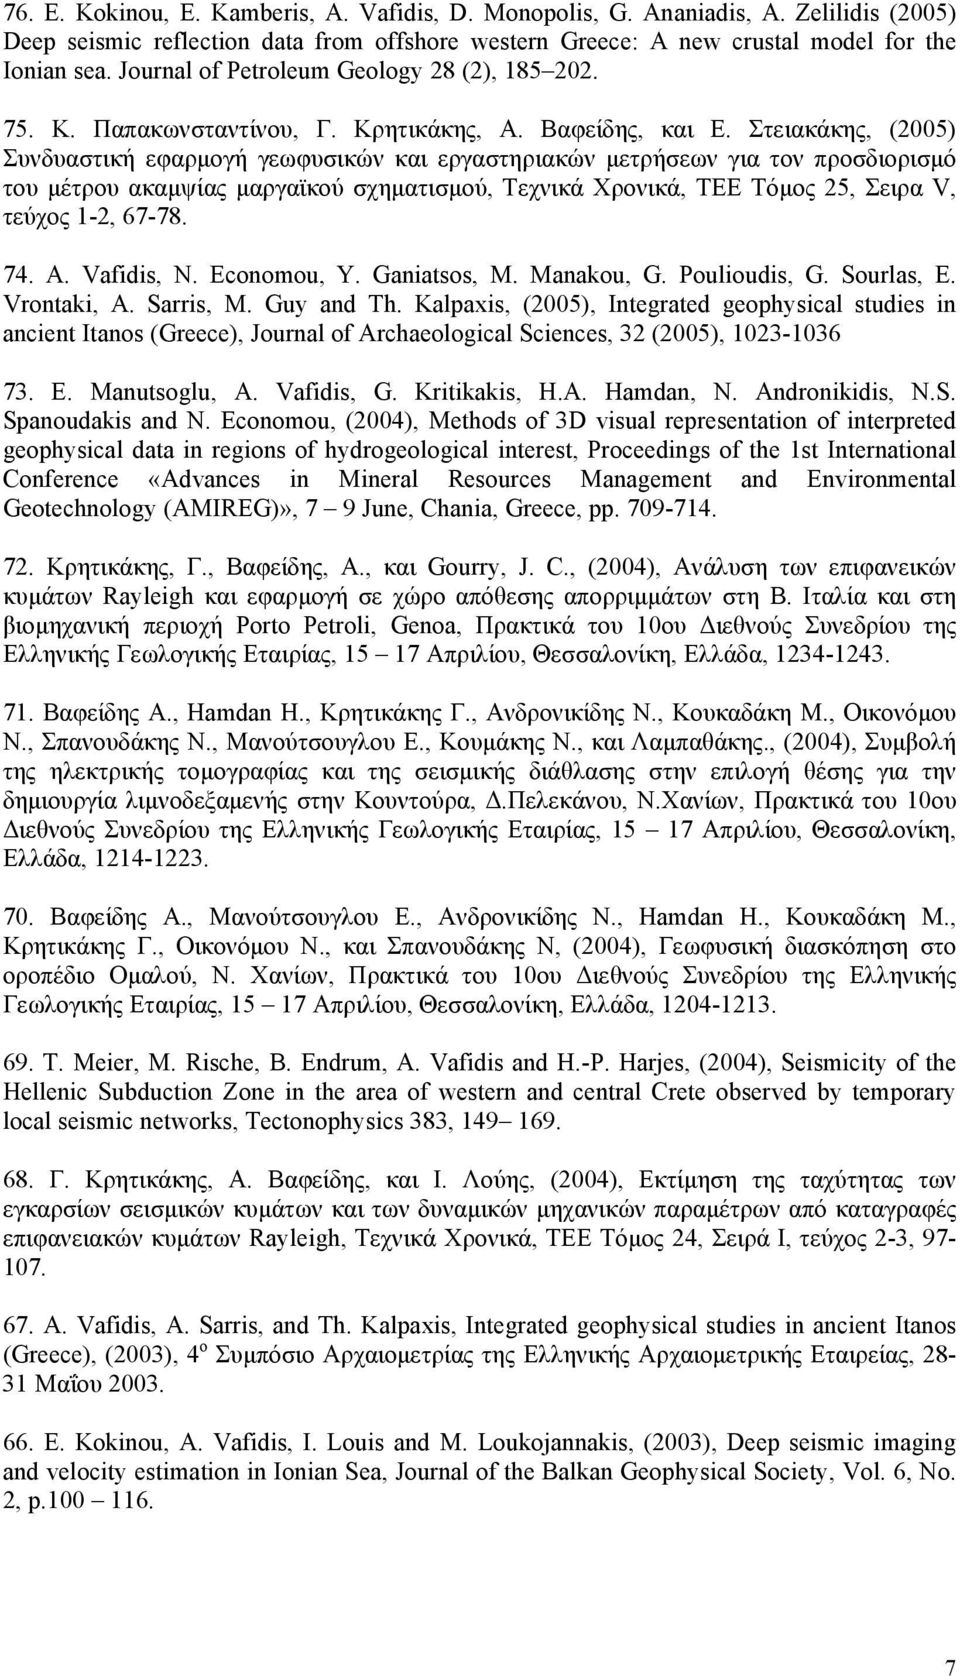 Στειακάκης, (2005) Συνδυαστική εφαρμογή γεωφυσικών και εργαστηριακών μετρήσεων για τον προσδιορισμό του μέτρου ακαμψίας μαργαϊκού σχηματισμού, Τεχνικά Χρονικά, ΤΕΕ Τόμος 25, Σειρα V, τεύχος 1-2,